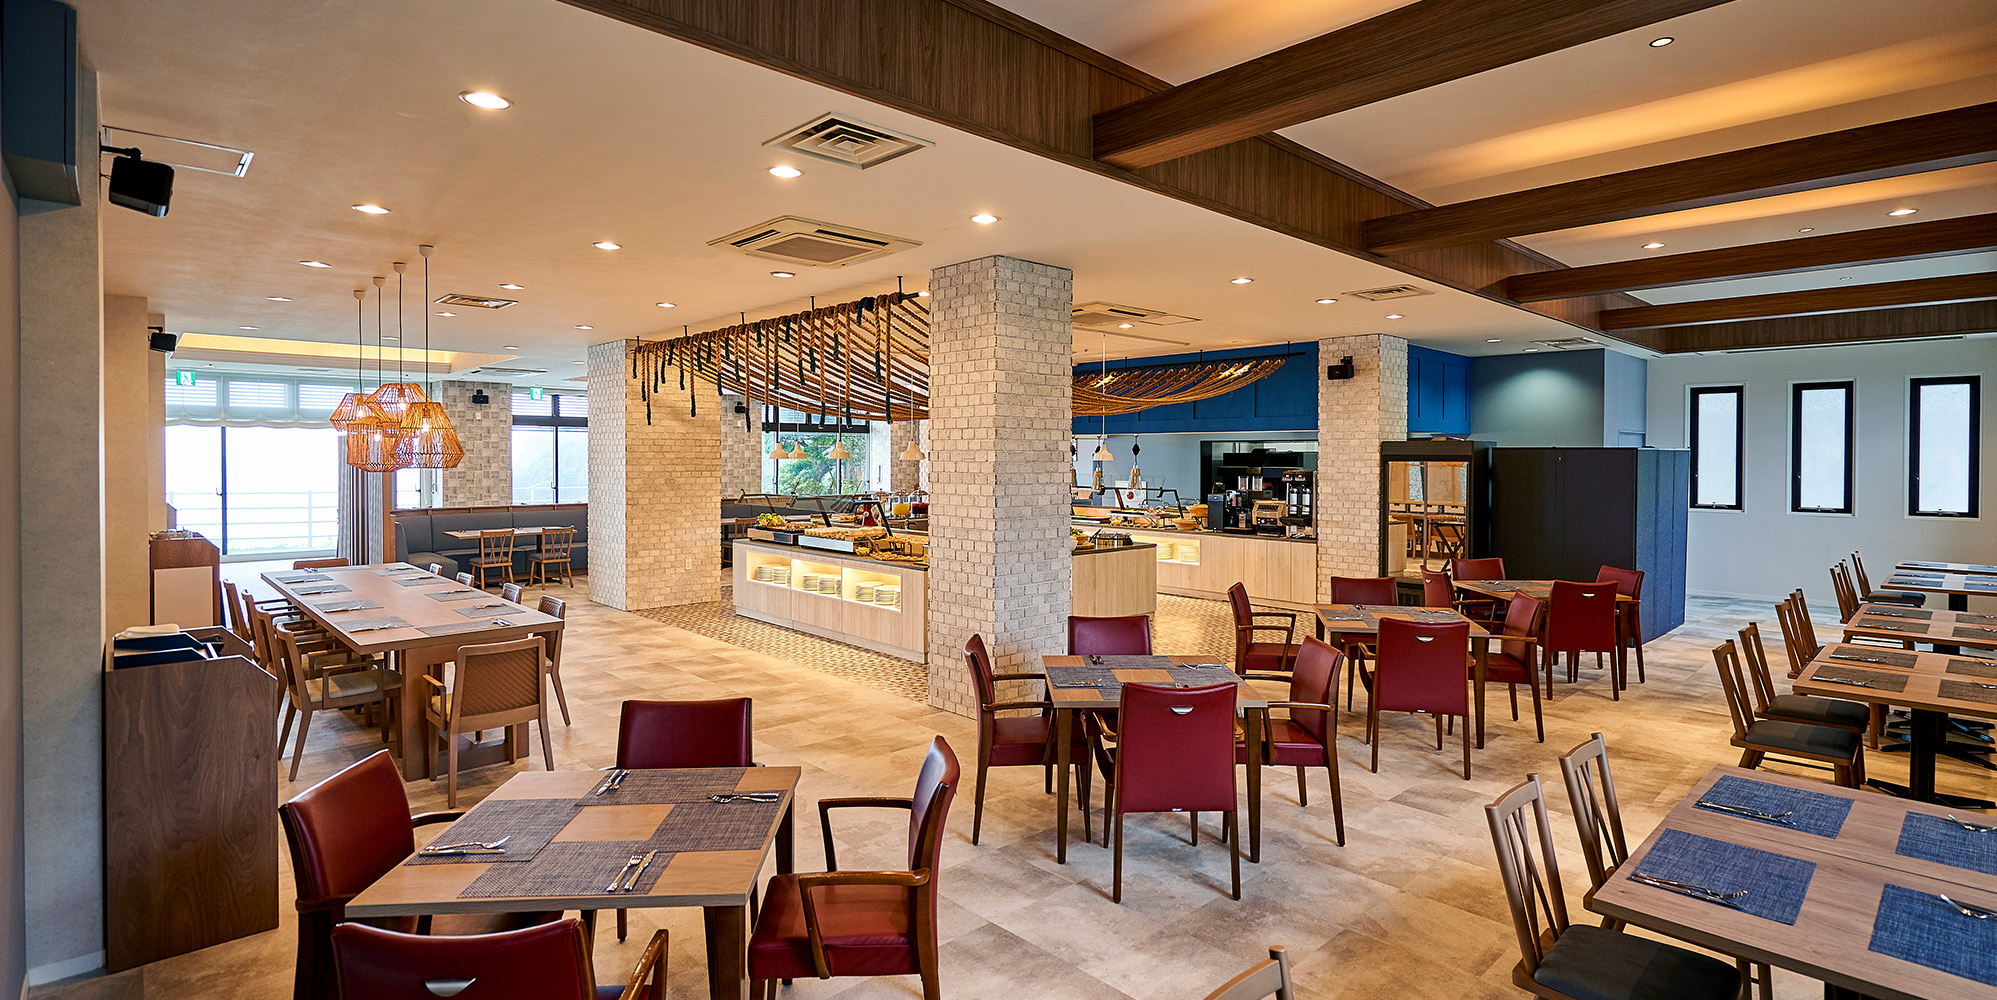 「堂ヶ島の海の食堂」がコンセプトのレストラン「タベルナ・ディ・マーレ」